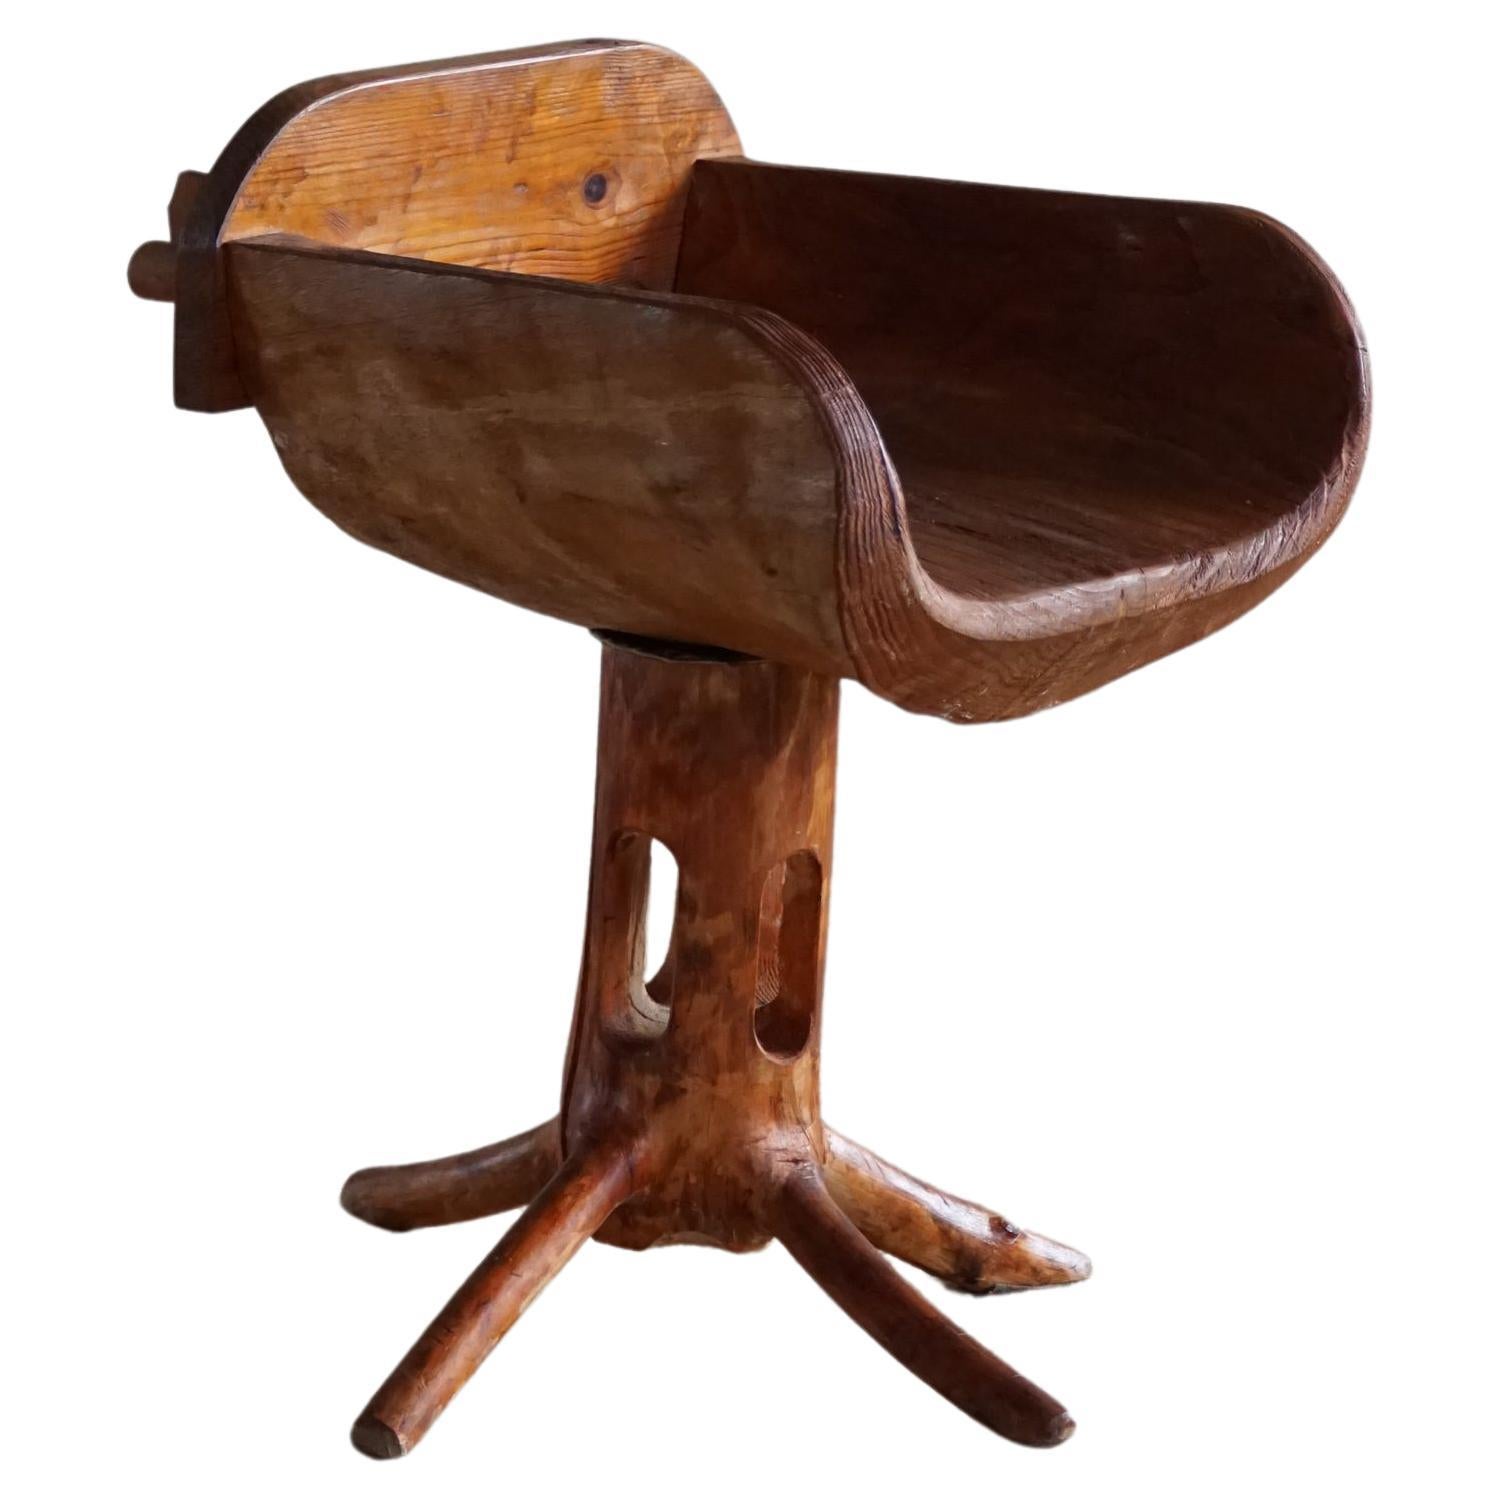 Skulpturaler einzigartiger Stuhl mitmp Chair aus massivem Kiefernholz von finnischem Matti Martikka, 1960er Jahre